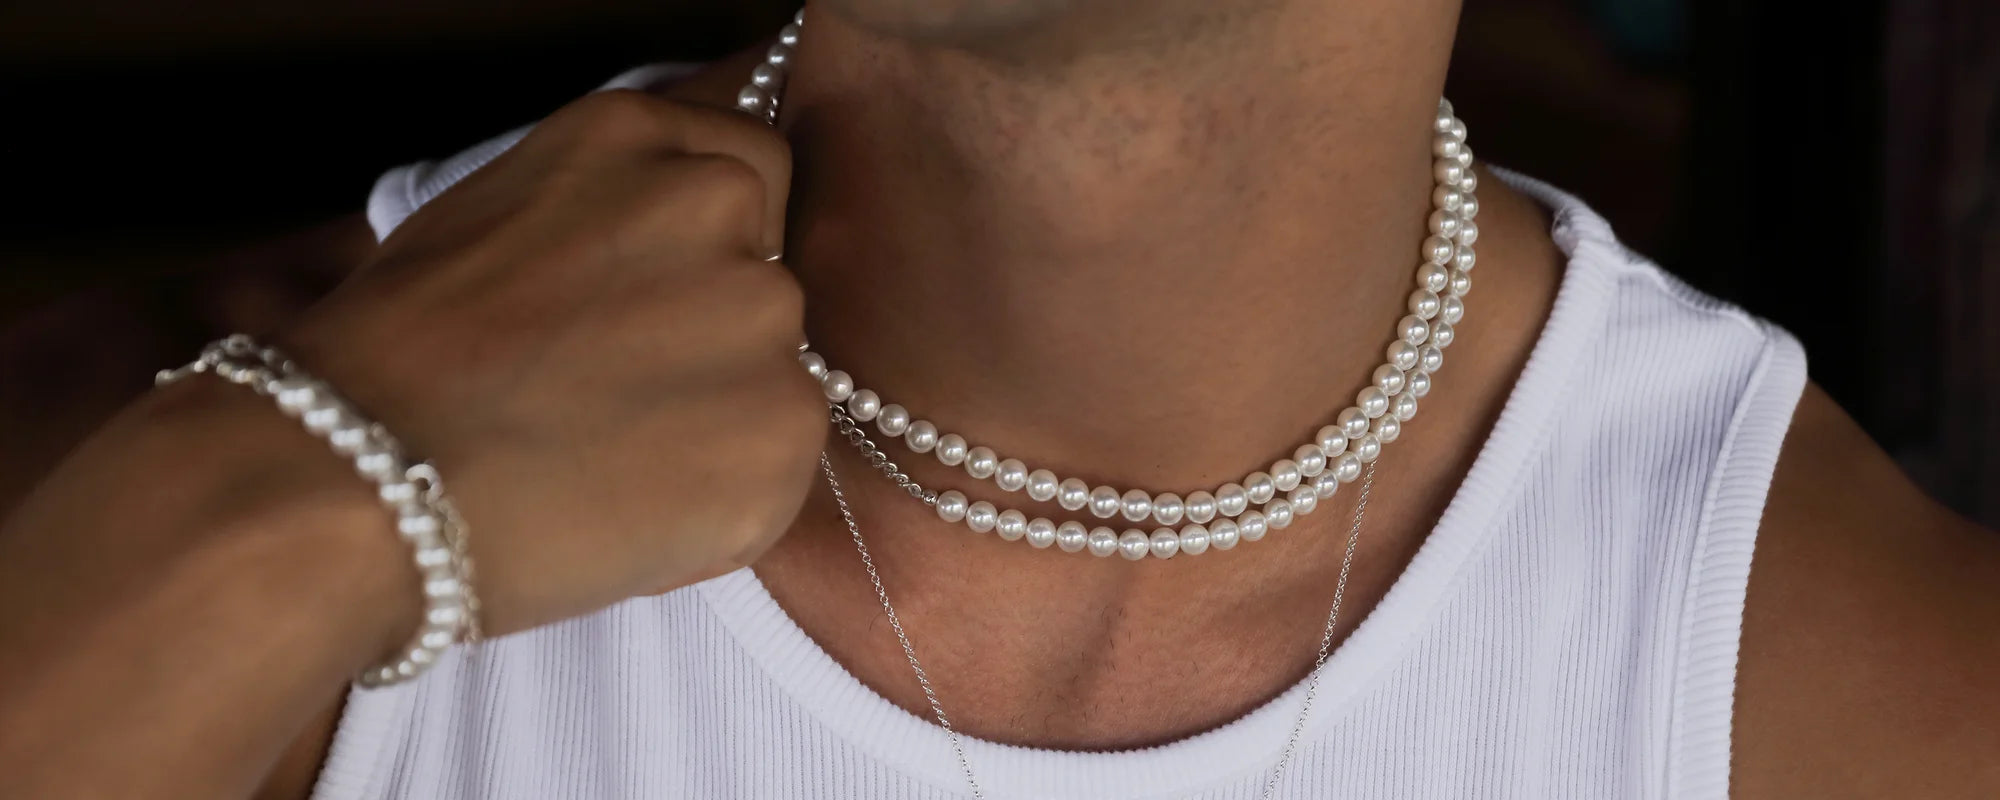 Halskette und Armband mit Perlen